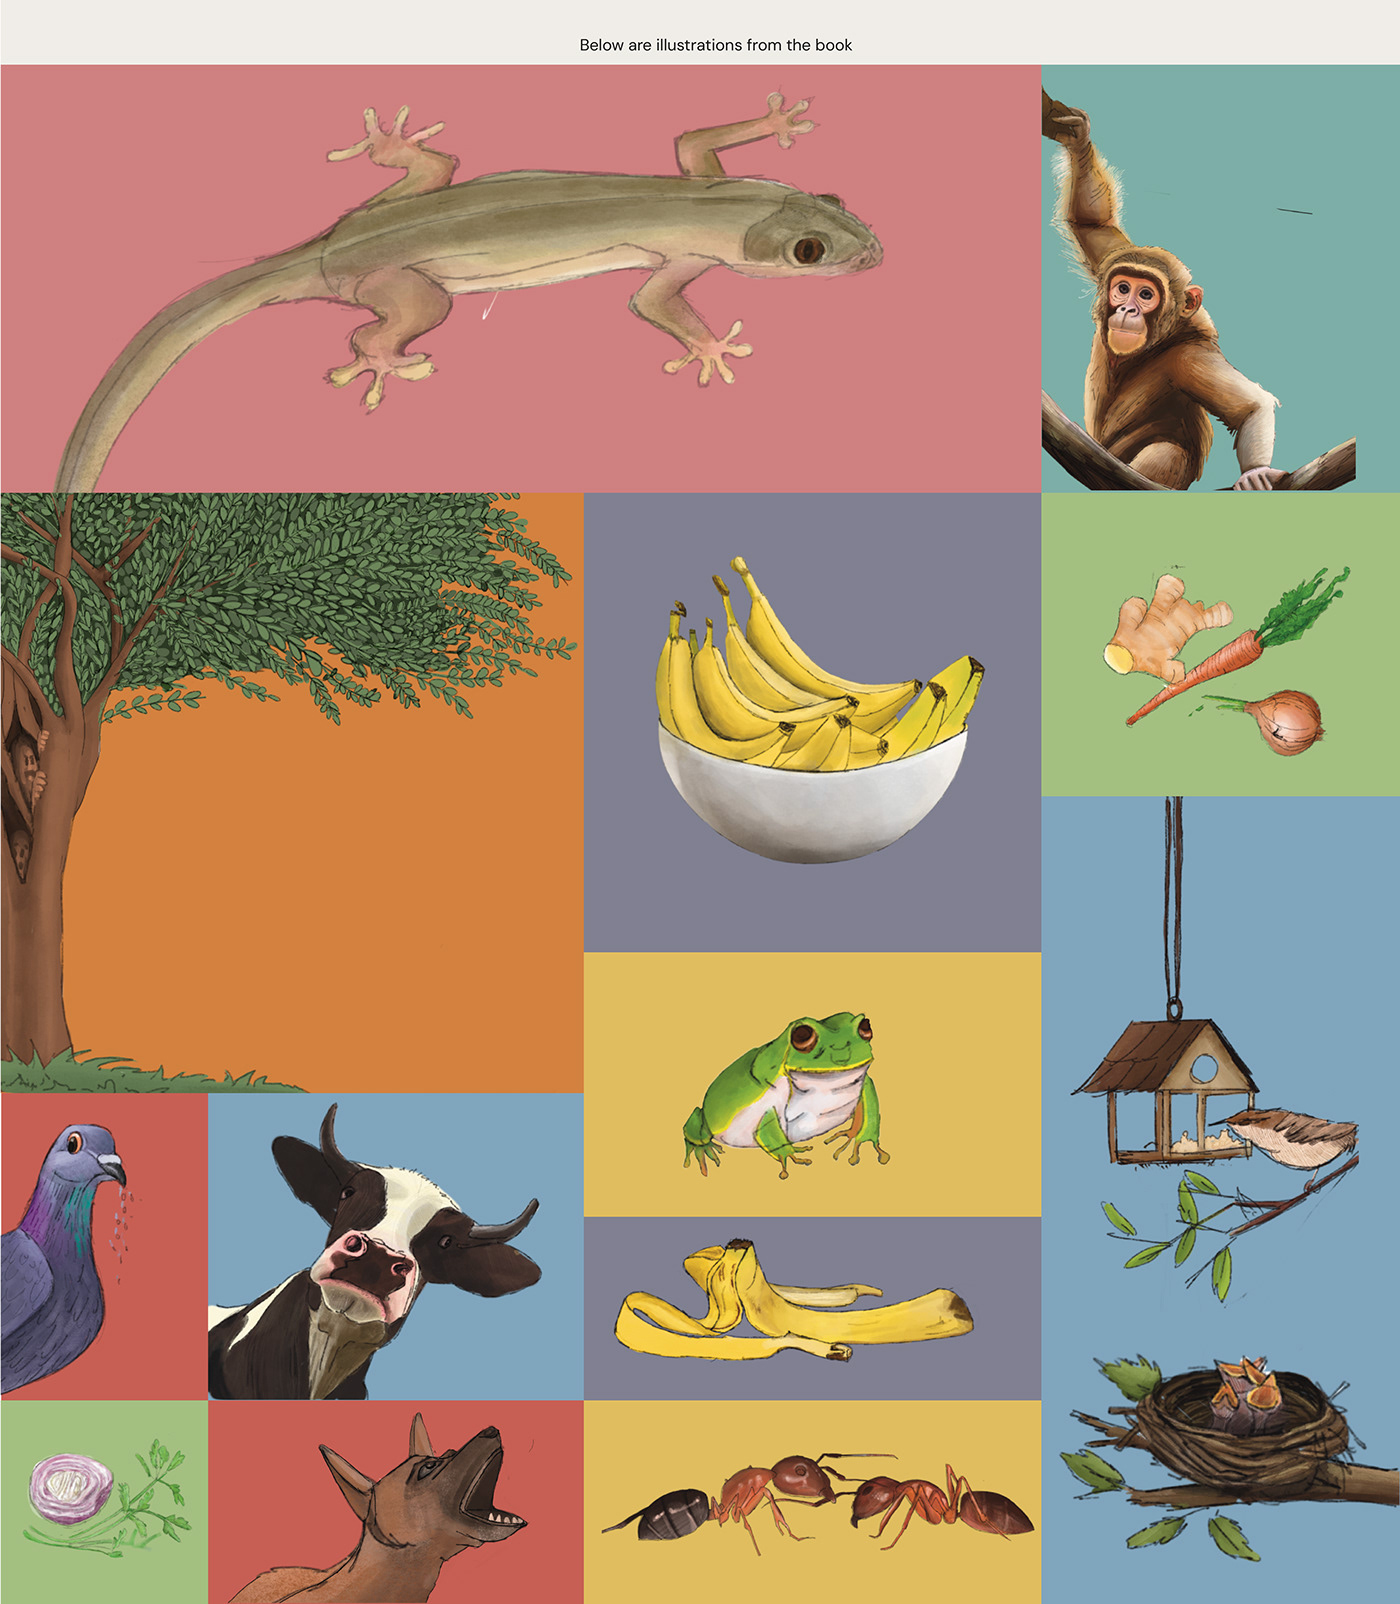 publication book design ILLUSTRATION  layoutdesign Illustrated book childrens book print design  Illustrative botanical illustration animalillustration